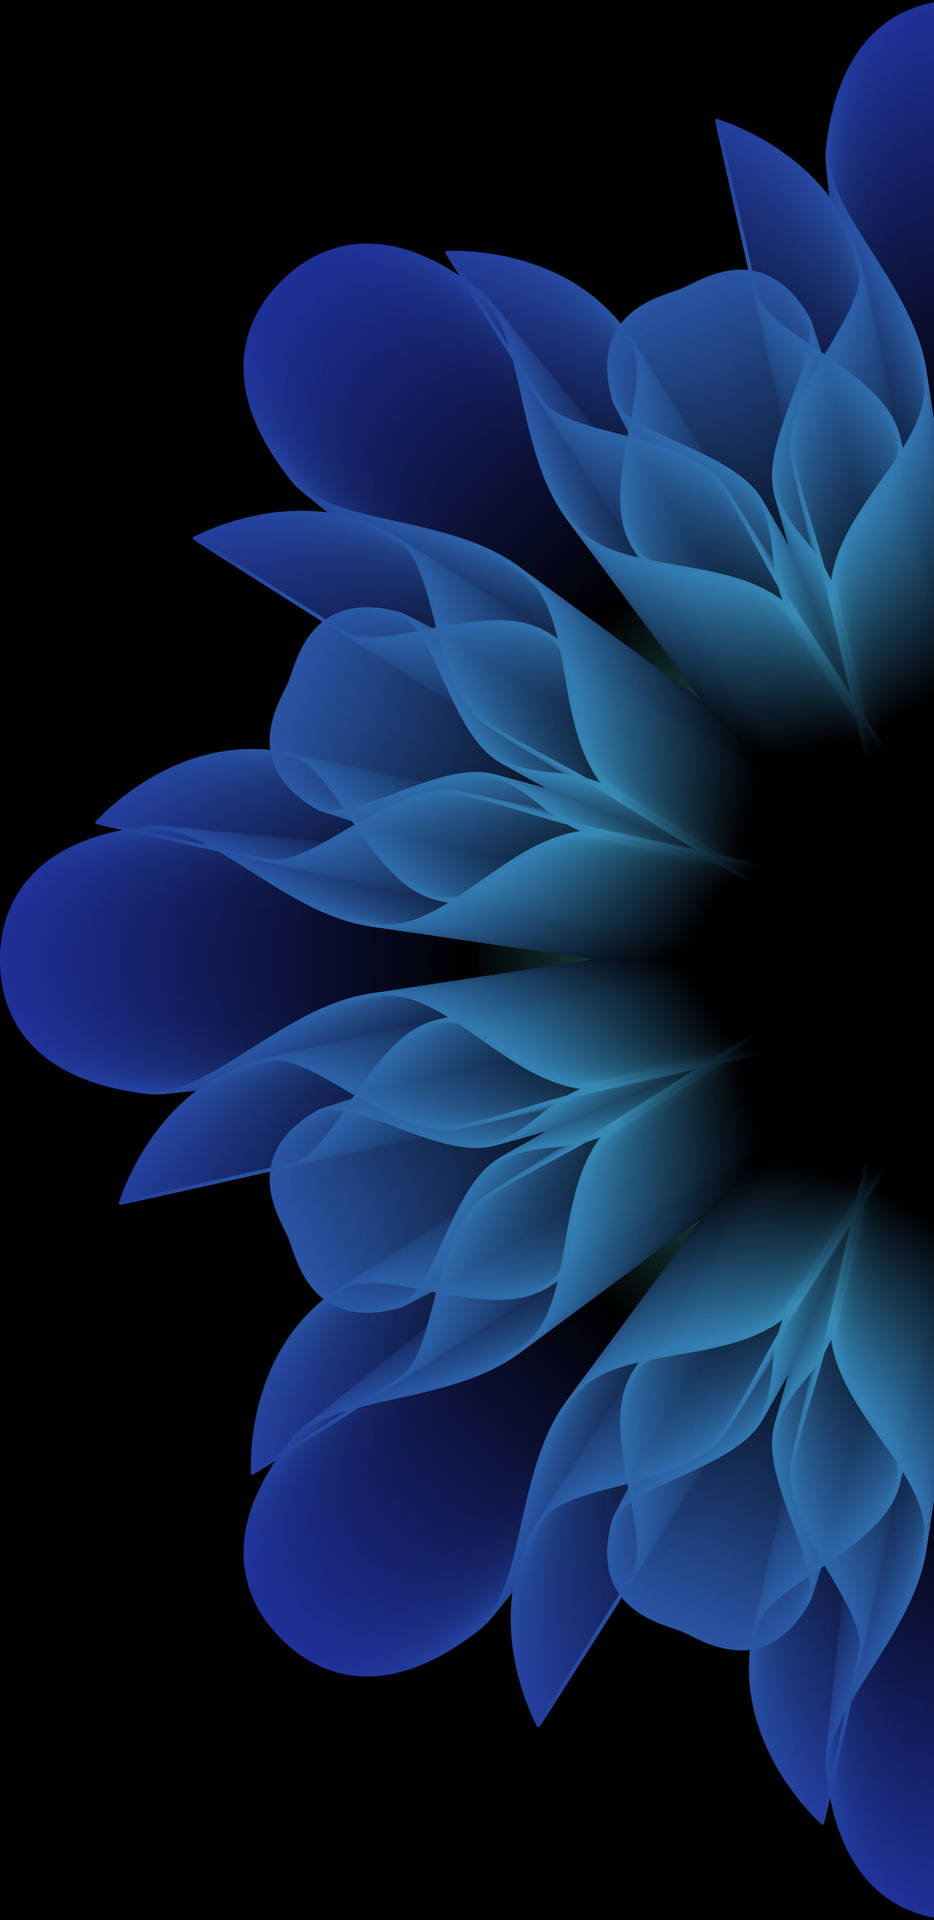 Blue Flower Mobile Digital Art Wallpaper